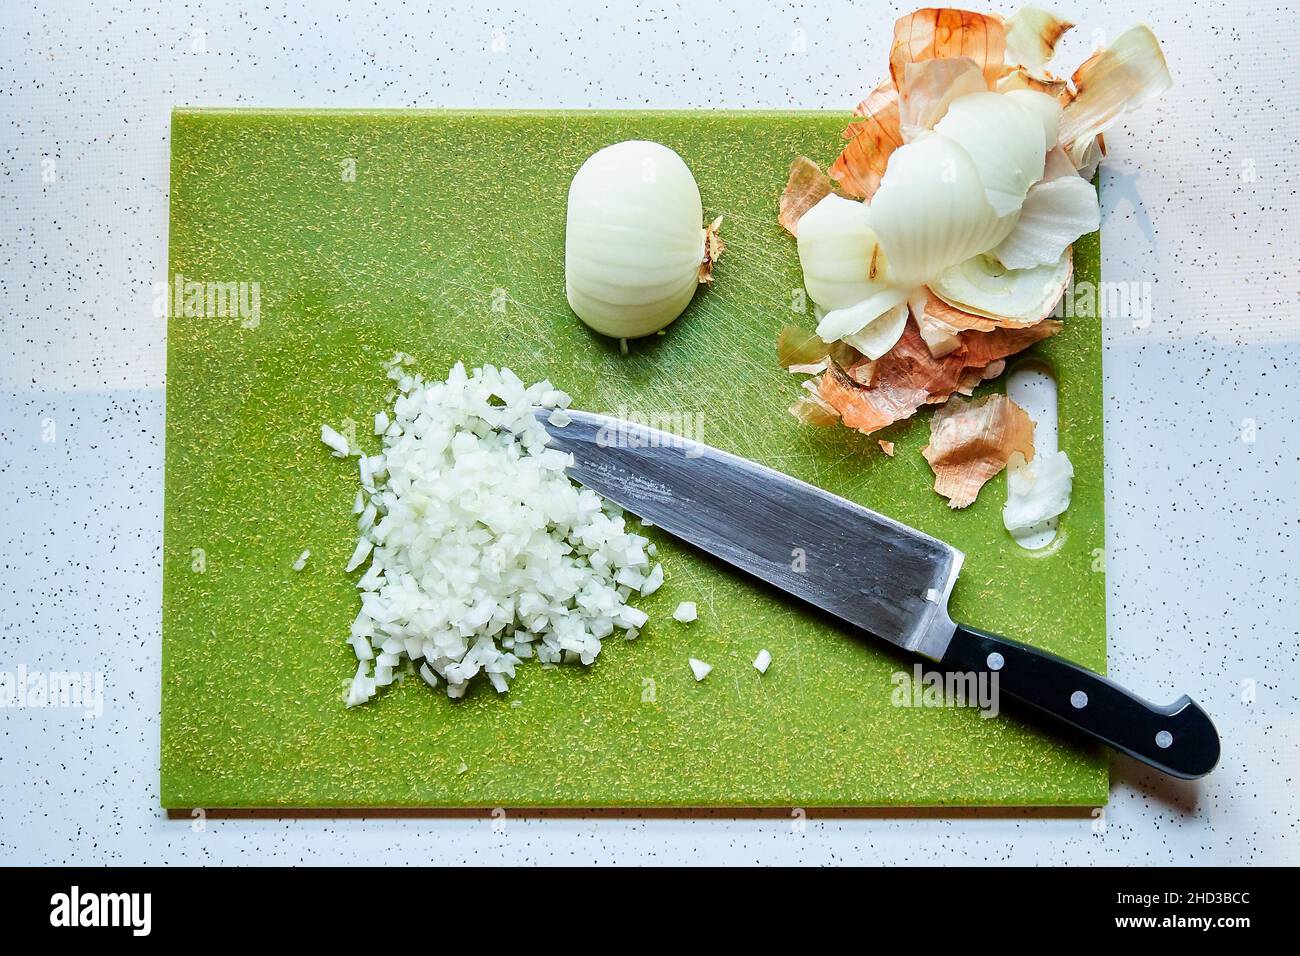 Vista dall'alto della cipolla tagliata a dadini e del coltello dello chef sul tagliere di plastica verde Foto Stock